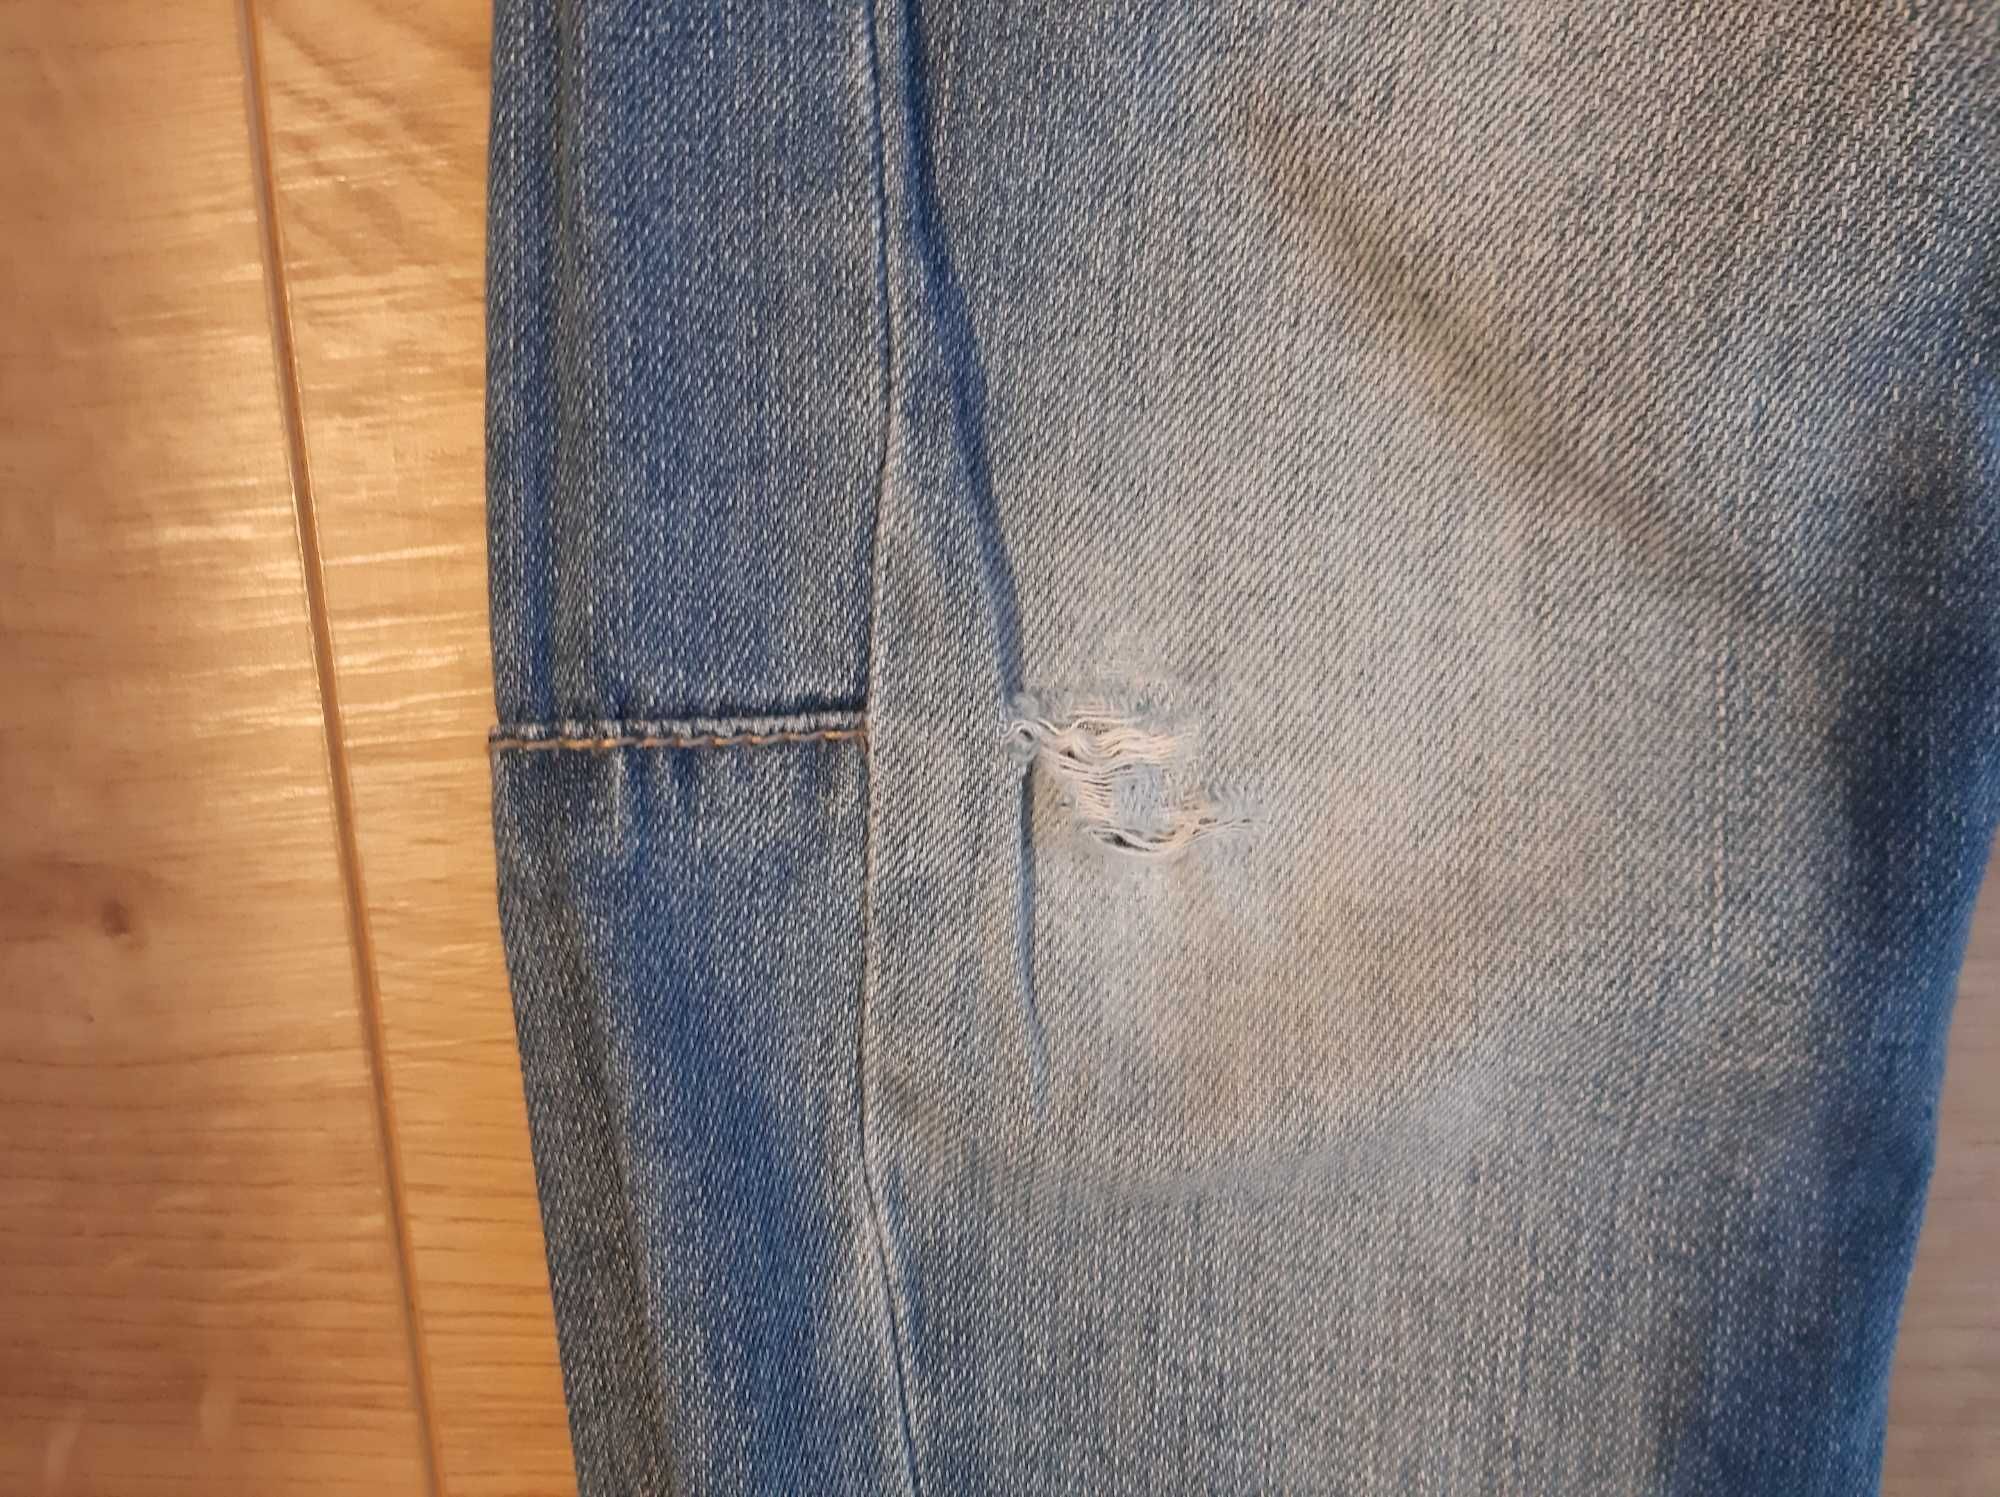 Spodnie chłopięce jeansowe rozm 110